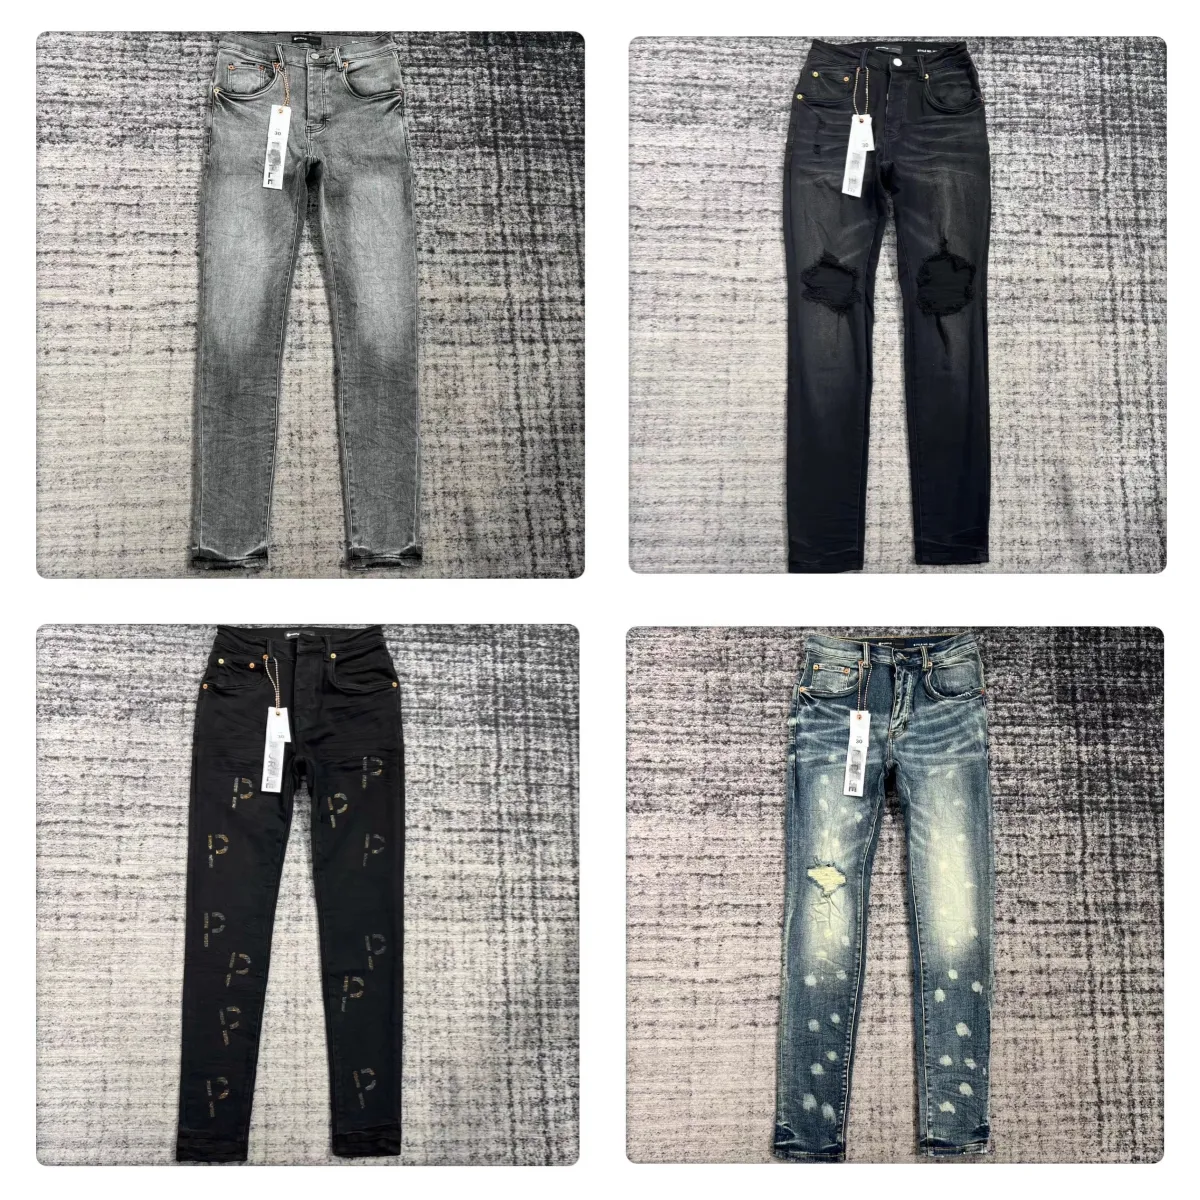 Lila Designer-Jeans-Hosen, Stickerei, Steppung, zerrissen, für Trendmarke, Vintage-Hose, Herren-Falte, schlanke, dünne, modische Jeans, Top-Qualität